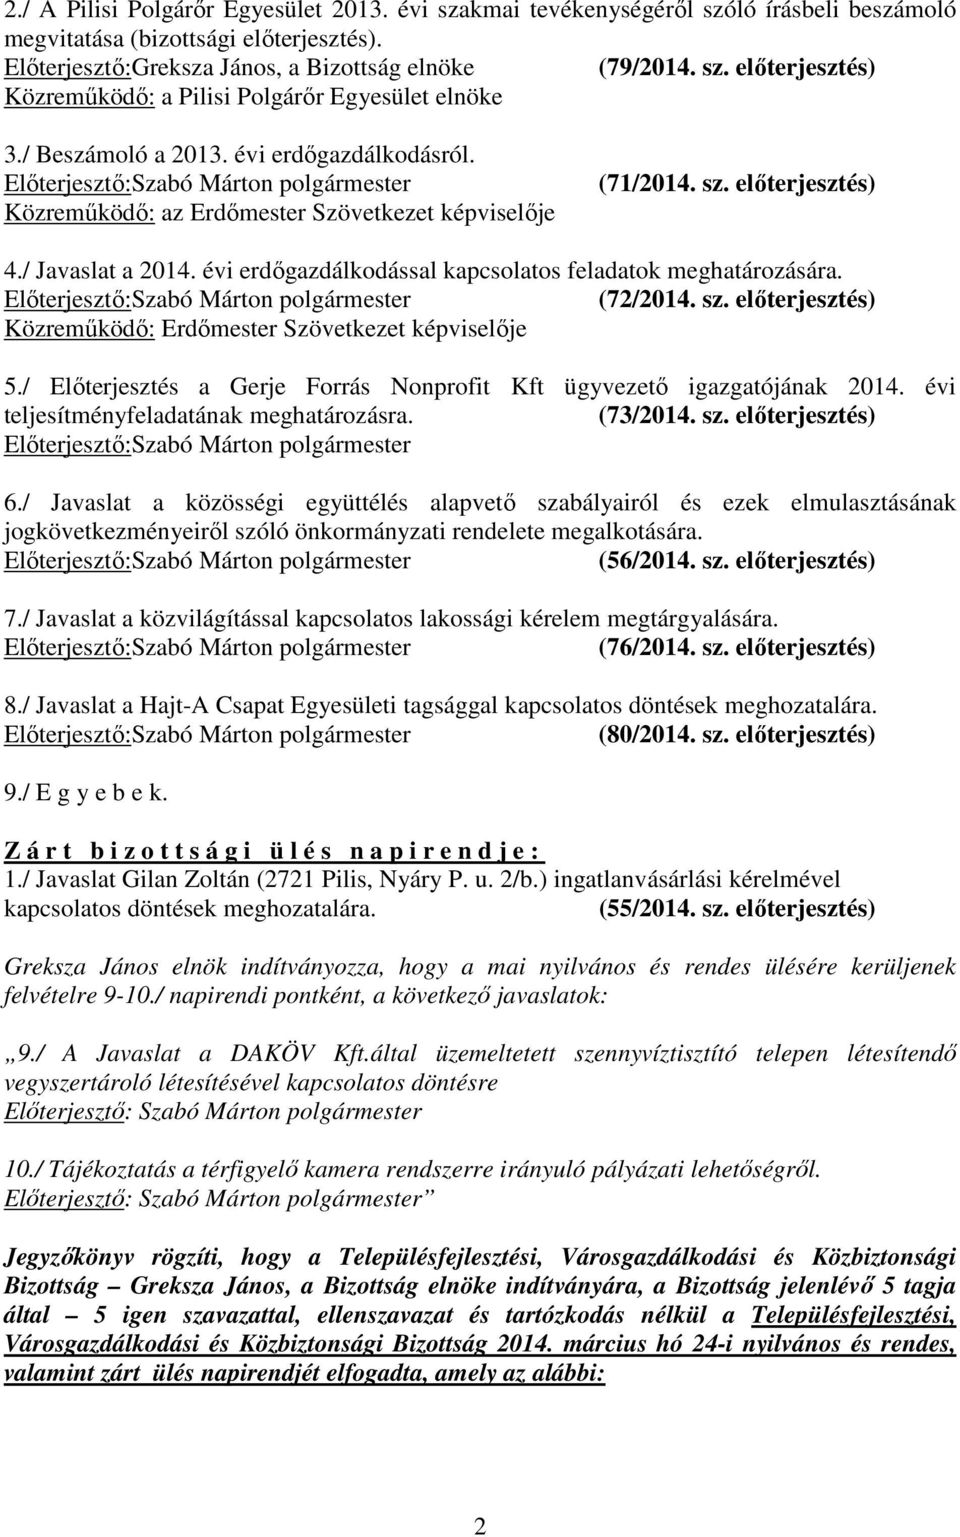 évi erdıgazdálkodással kapcsolatos feladatok meghatározására. (72/2014. sz. elıterjesztés) Közremőködı: Erdımester Szövetkezet képviselıje 5.